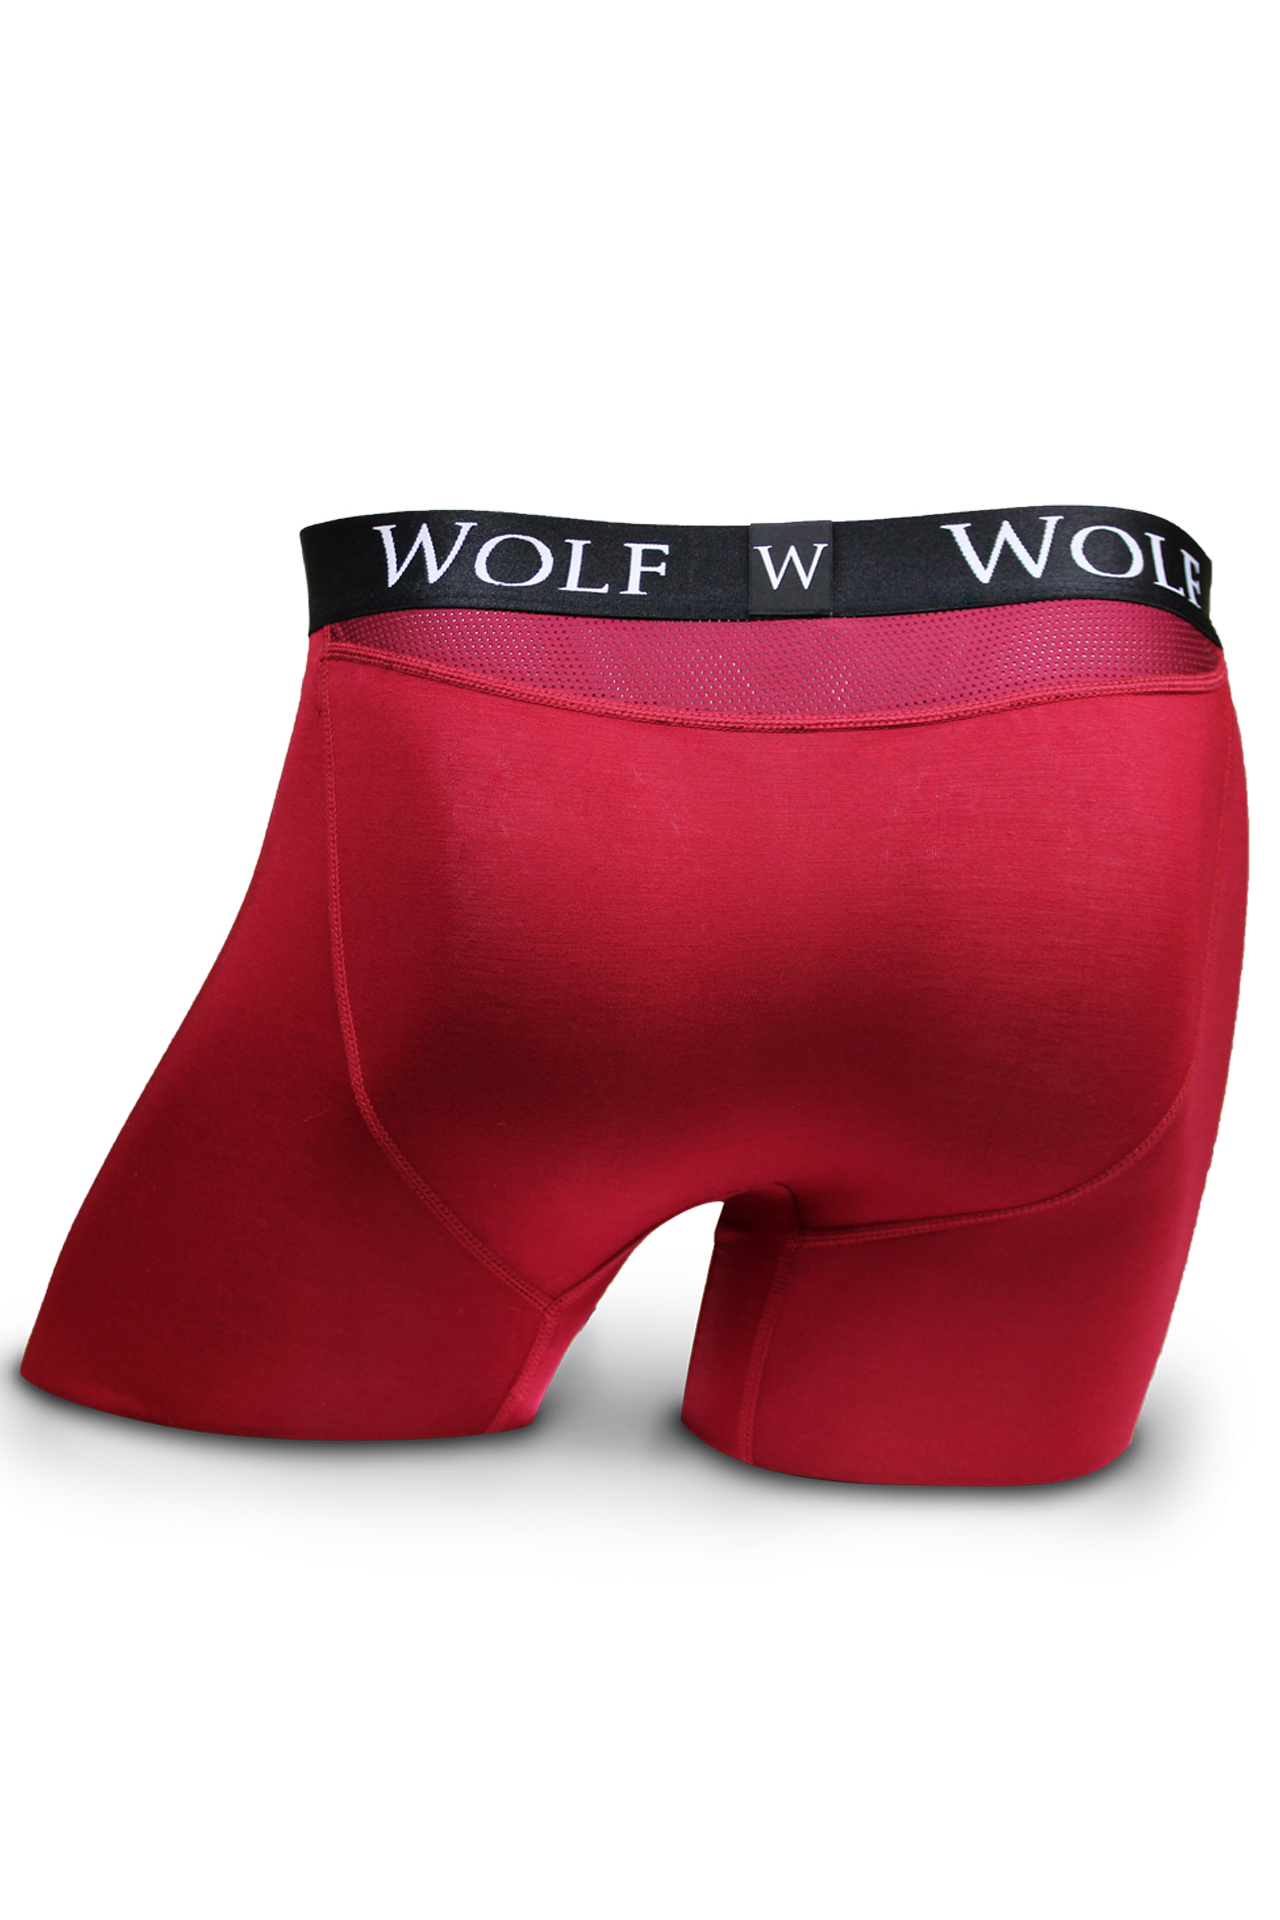 underwear clipart boxer shorts